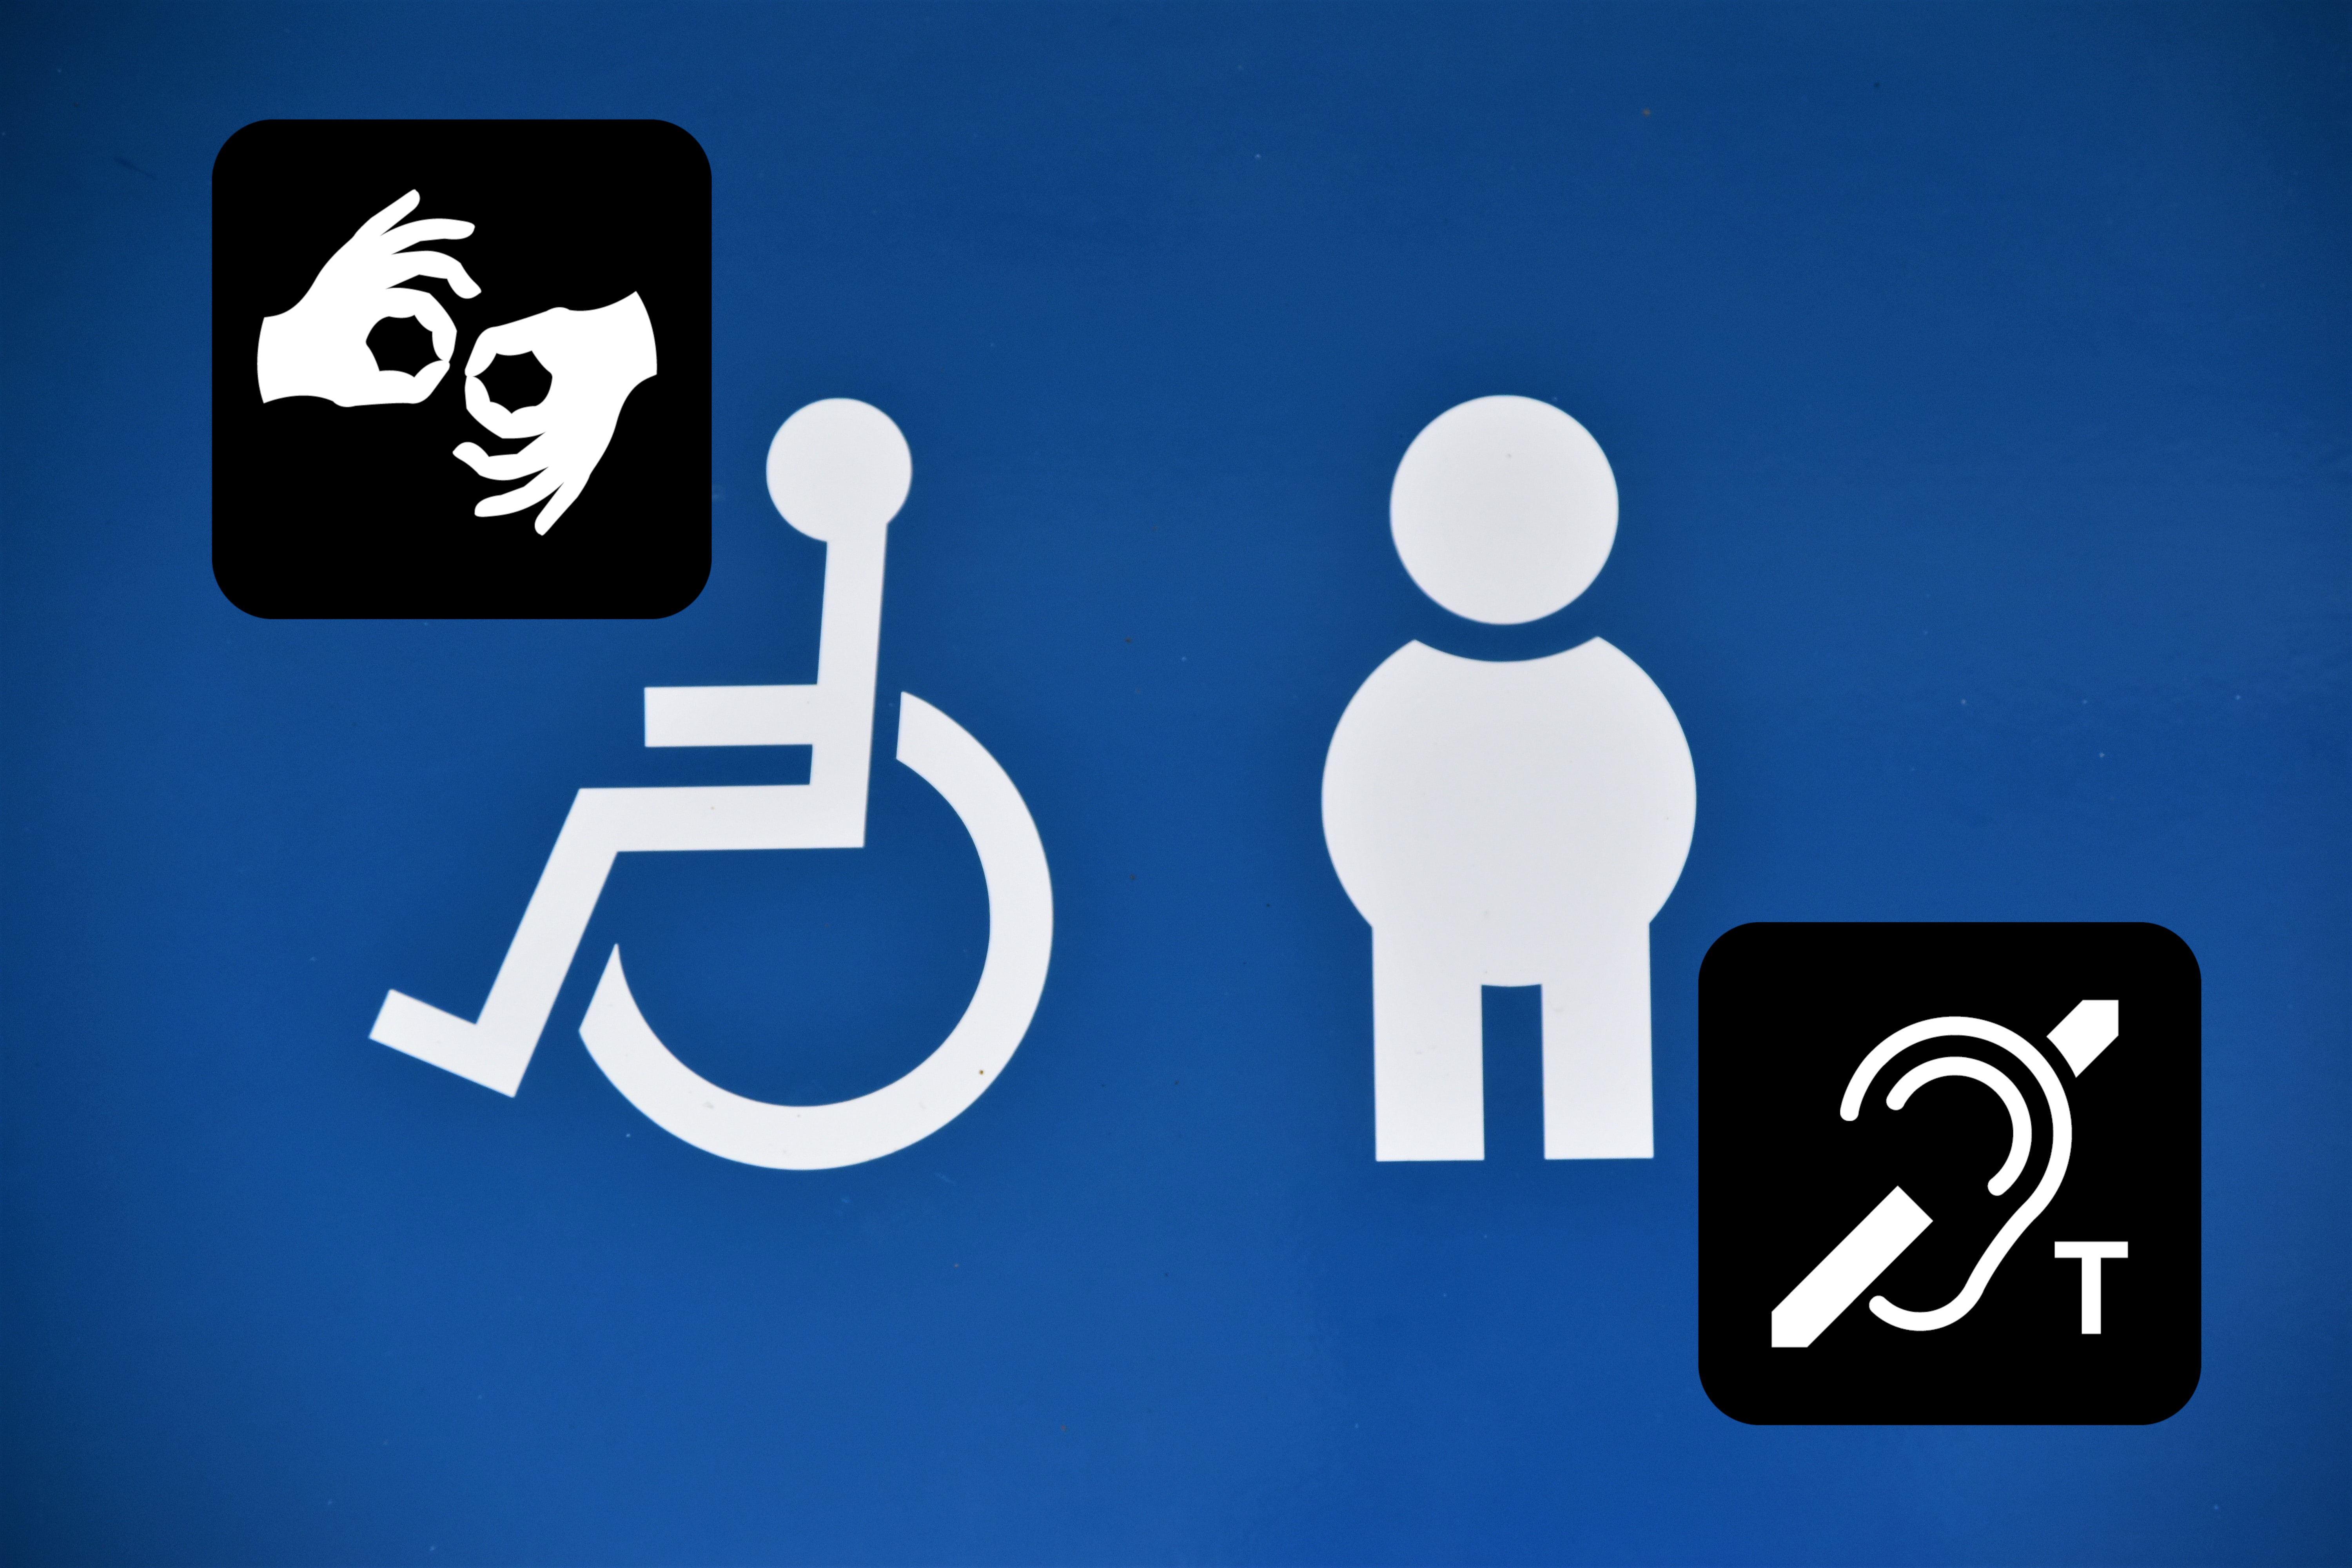 Ikony człowieka na wózku inwalidzkim, kobiety w ciąży, logo pętli indukcyjnej i logo PJM